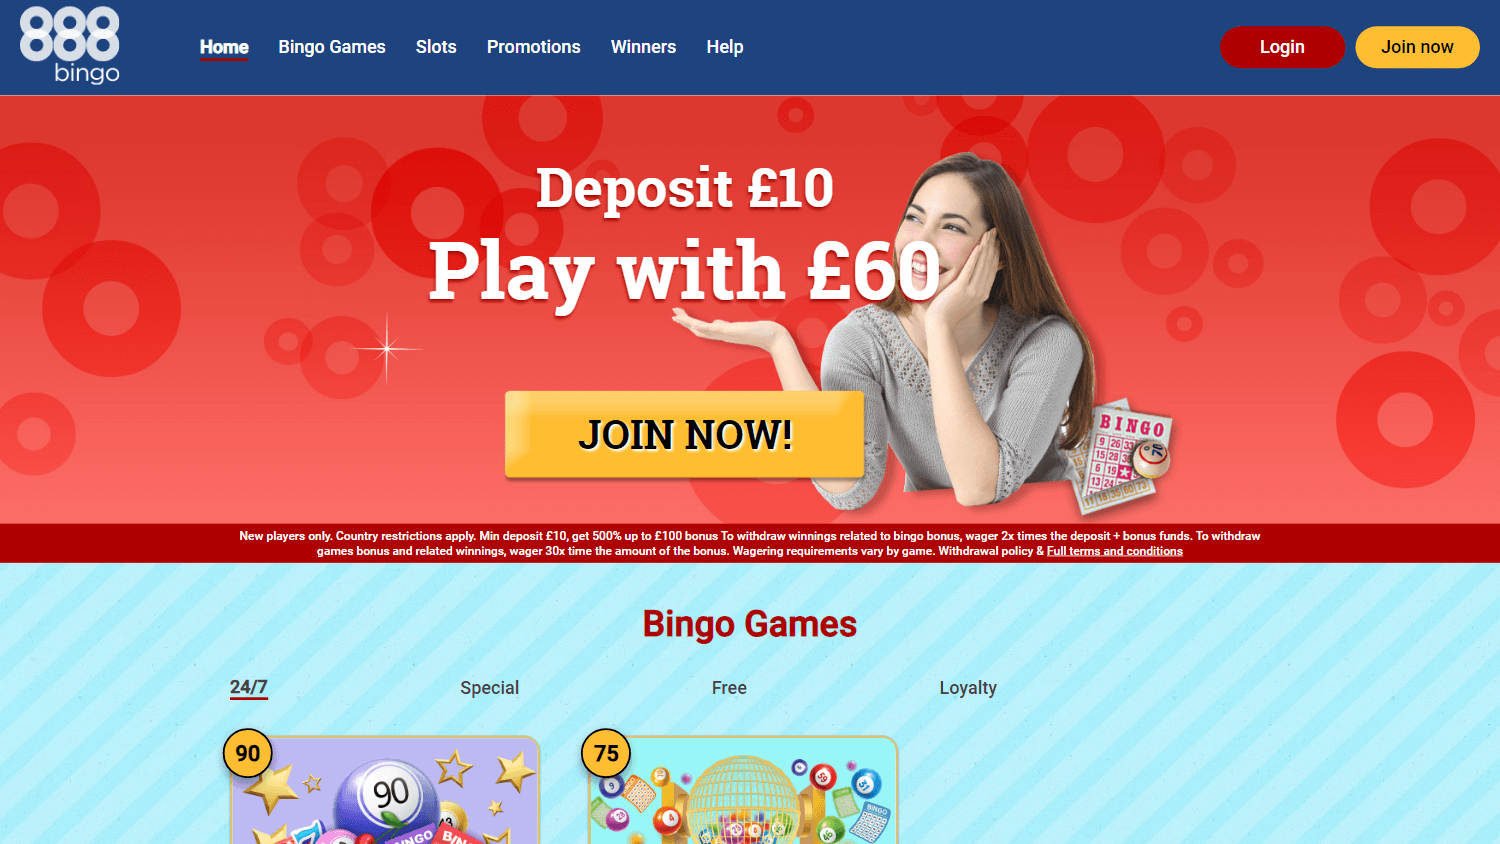 888_bingo_casino_homepage_desktop